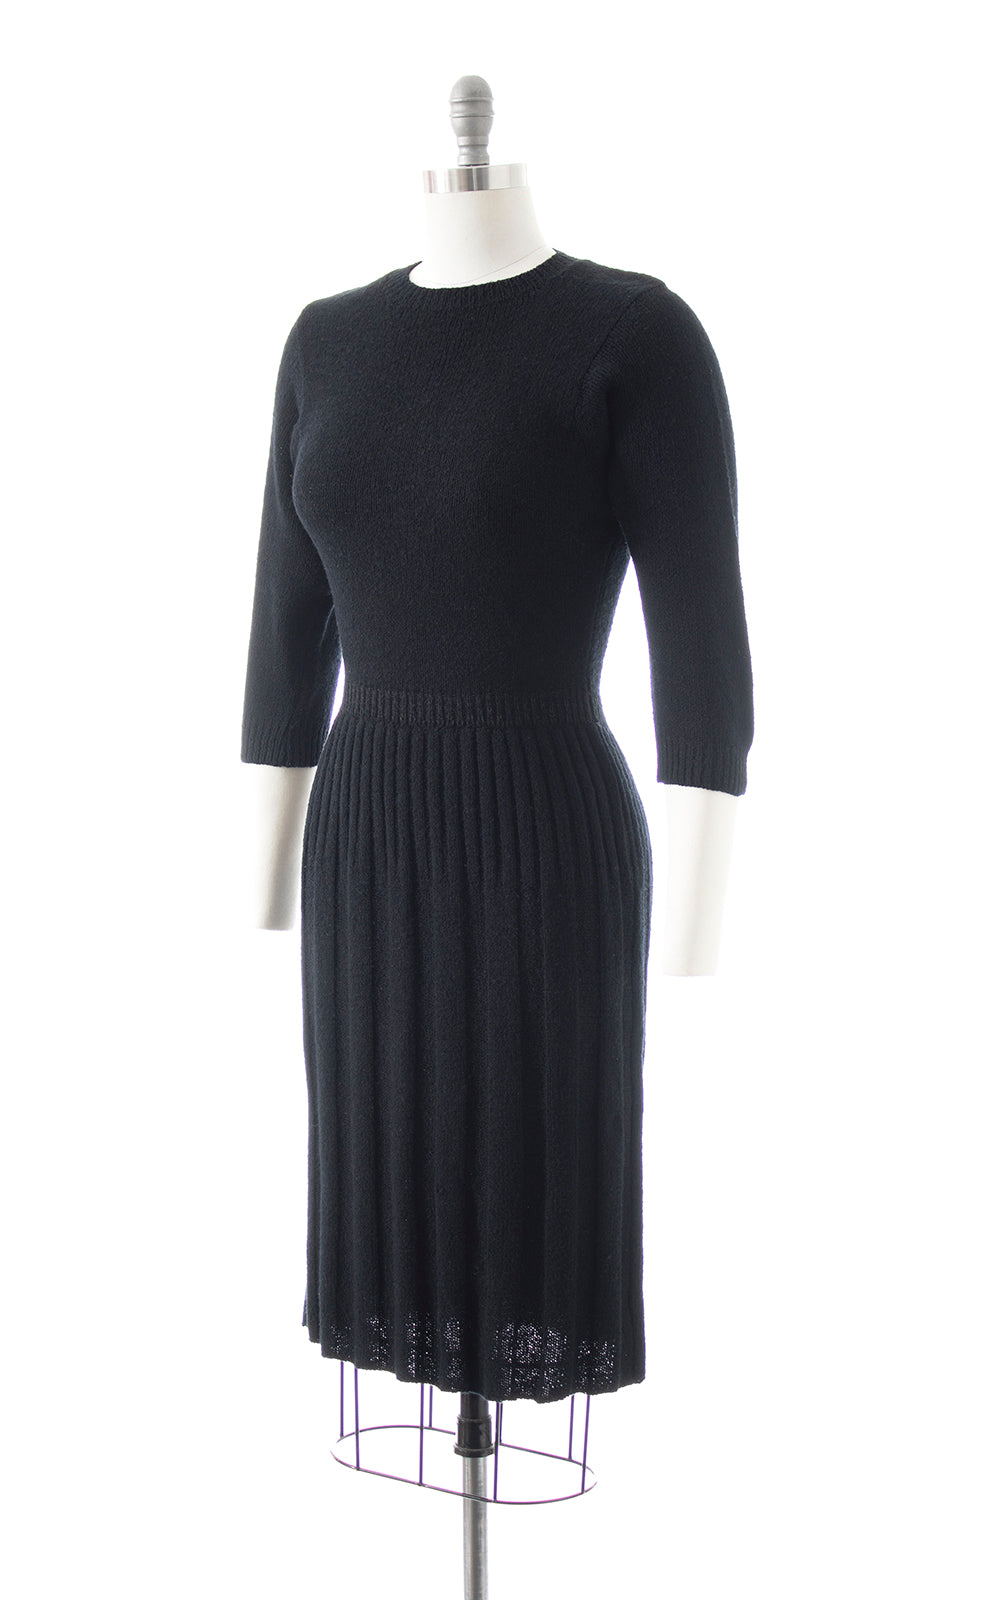 BLV x DEANNA || 1940s 1950s Black Knit Wool Sweater Dress | x-small/small